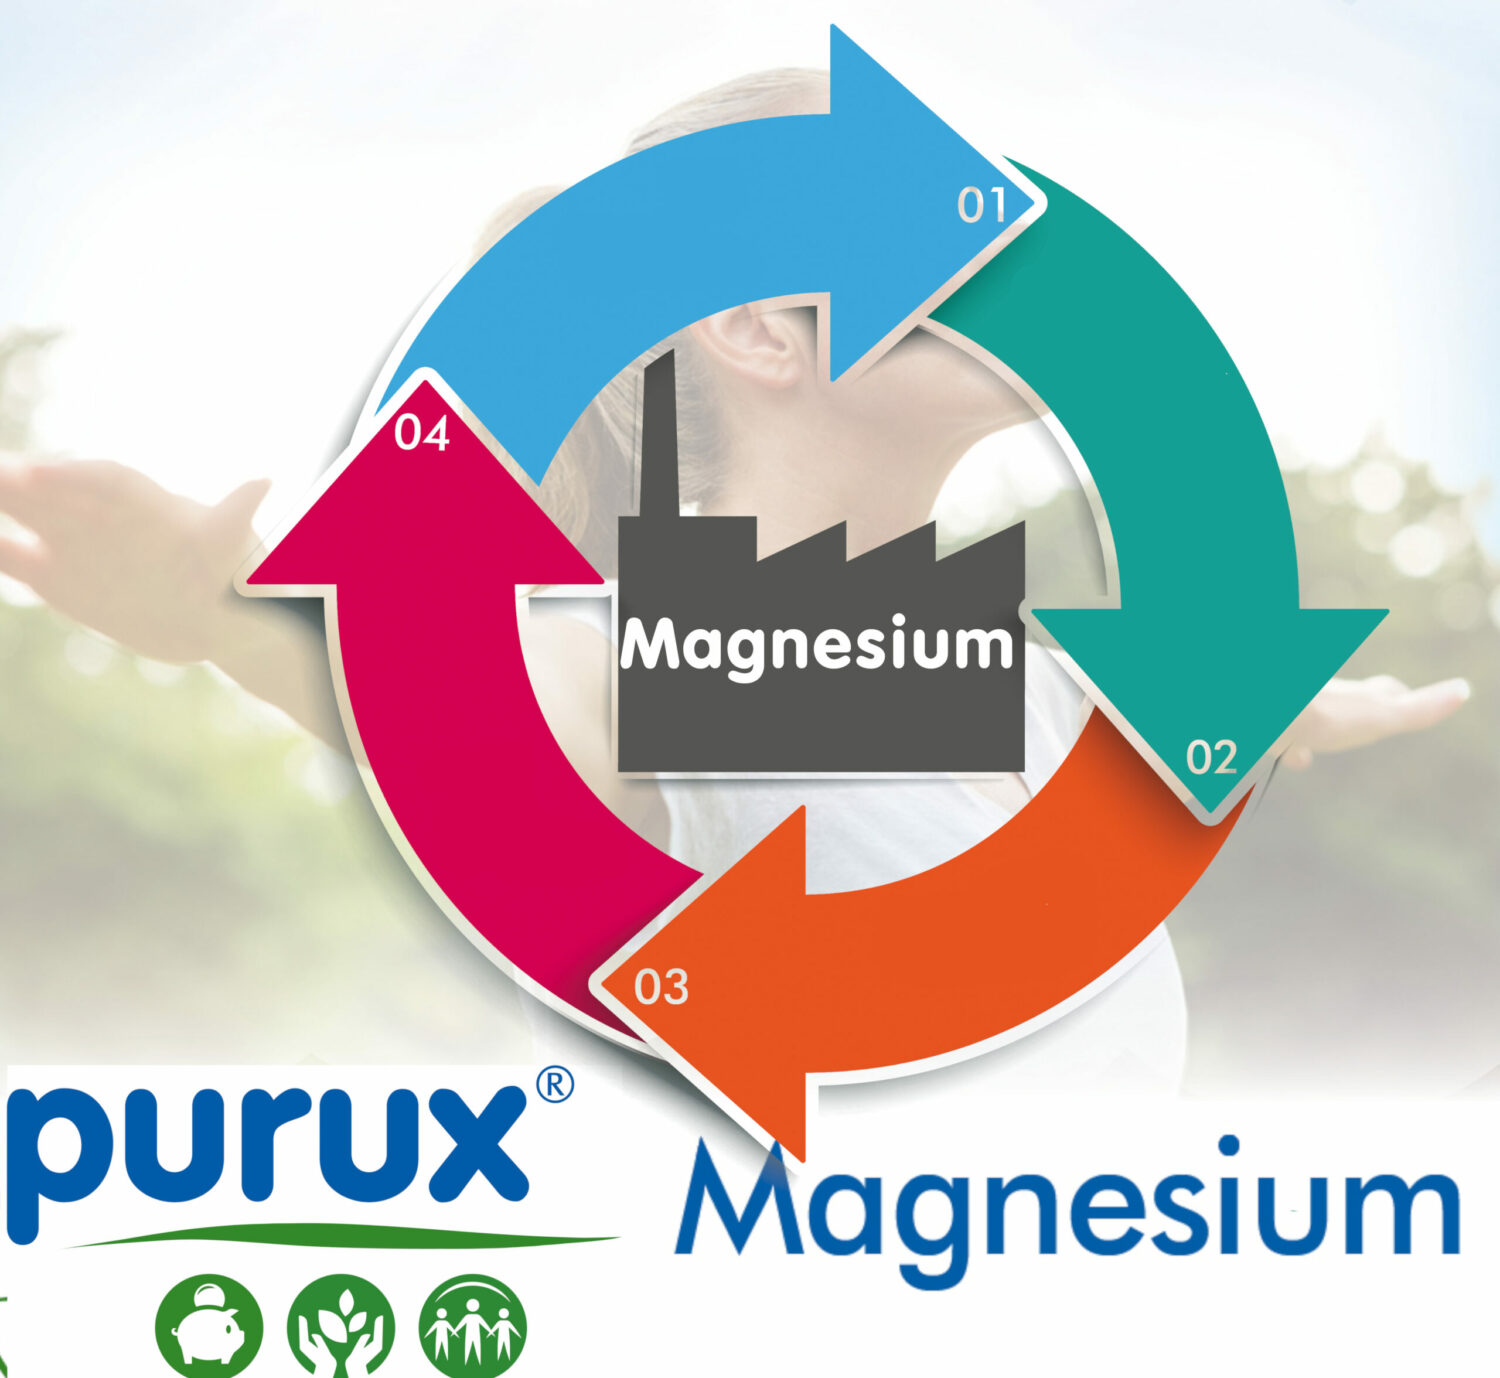 purux Magnesium Herstellung